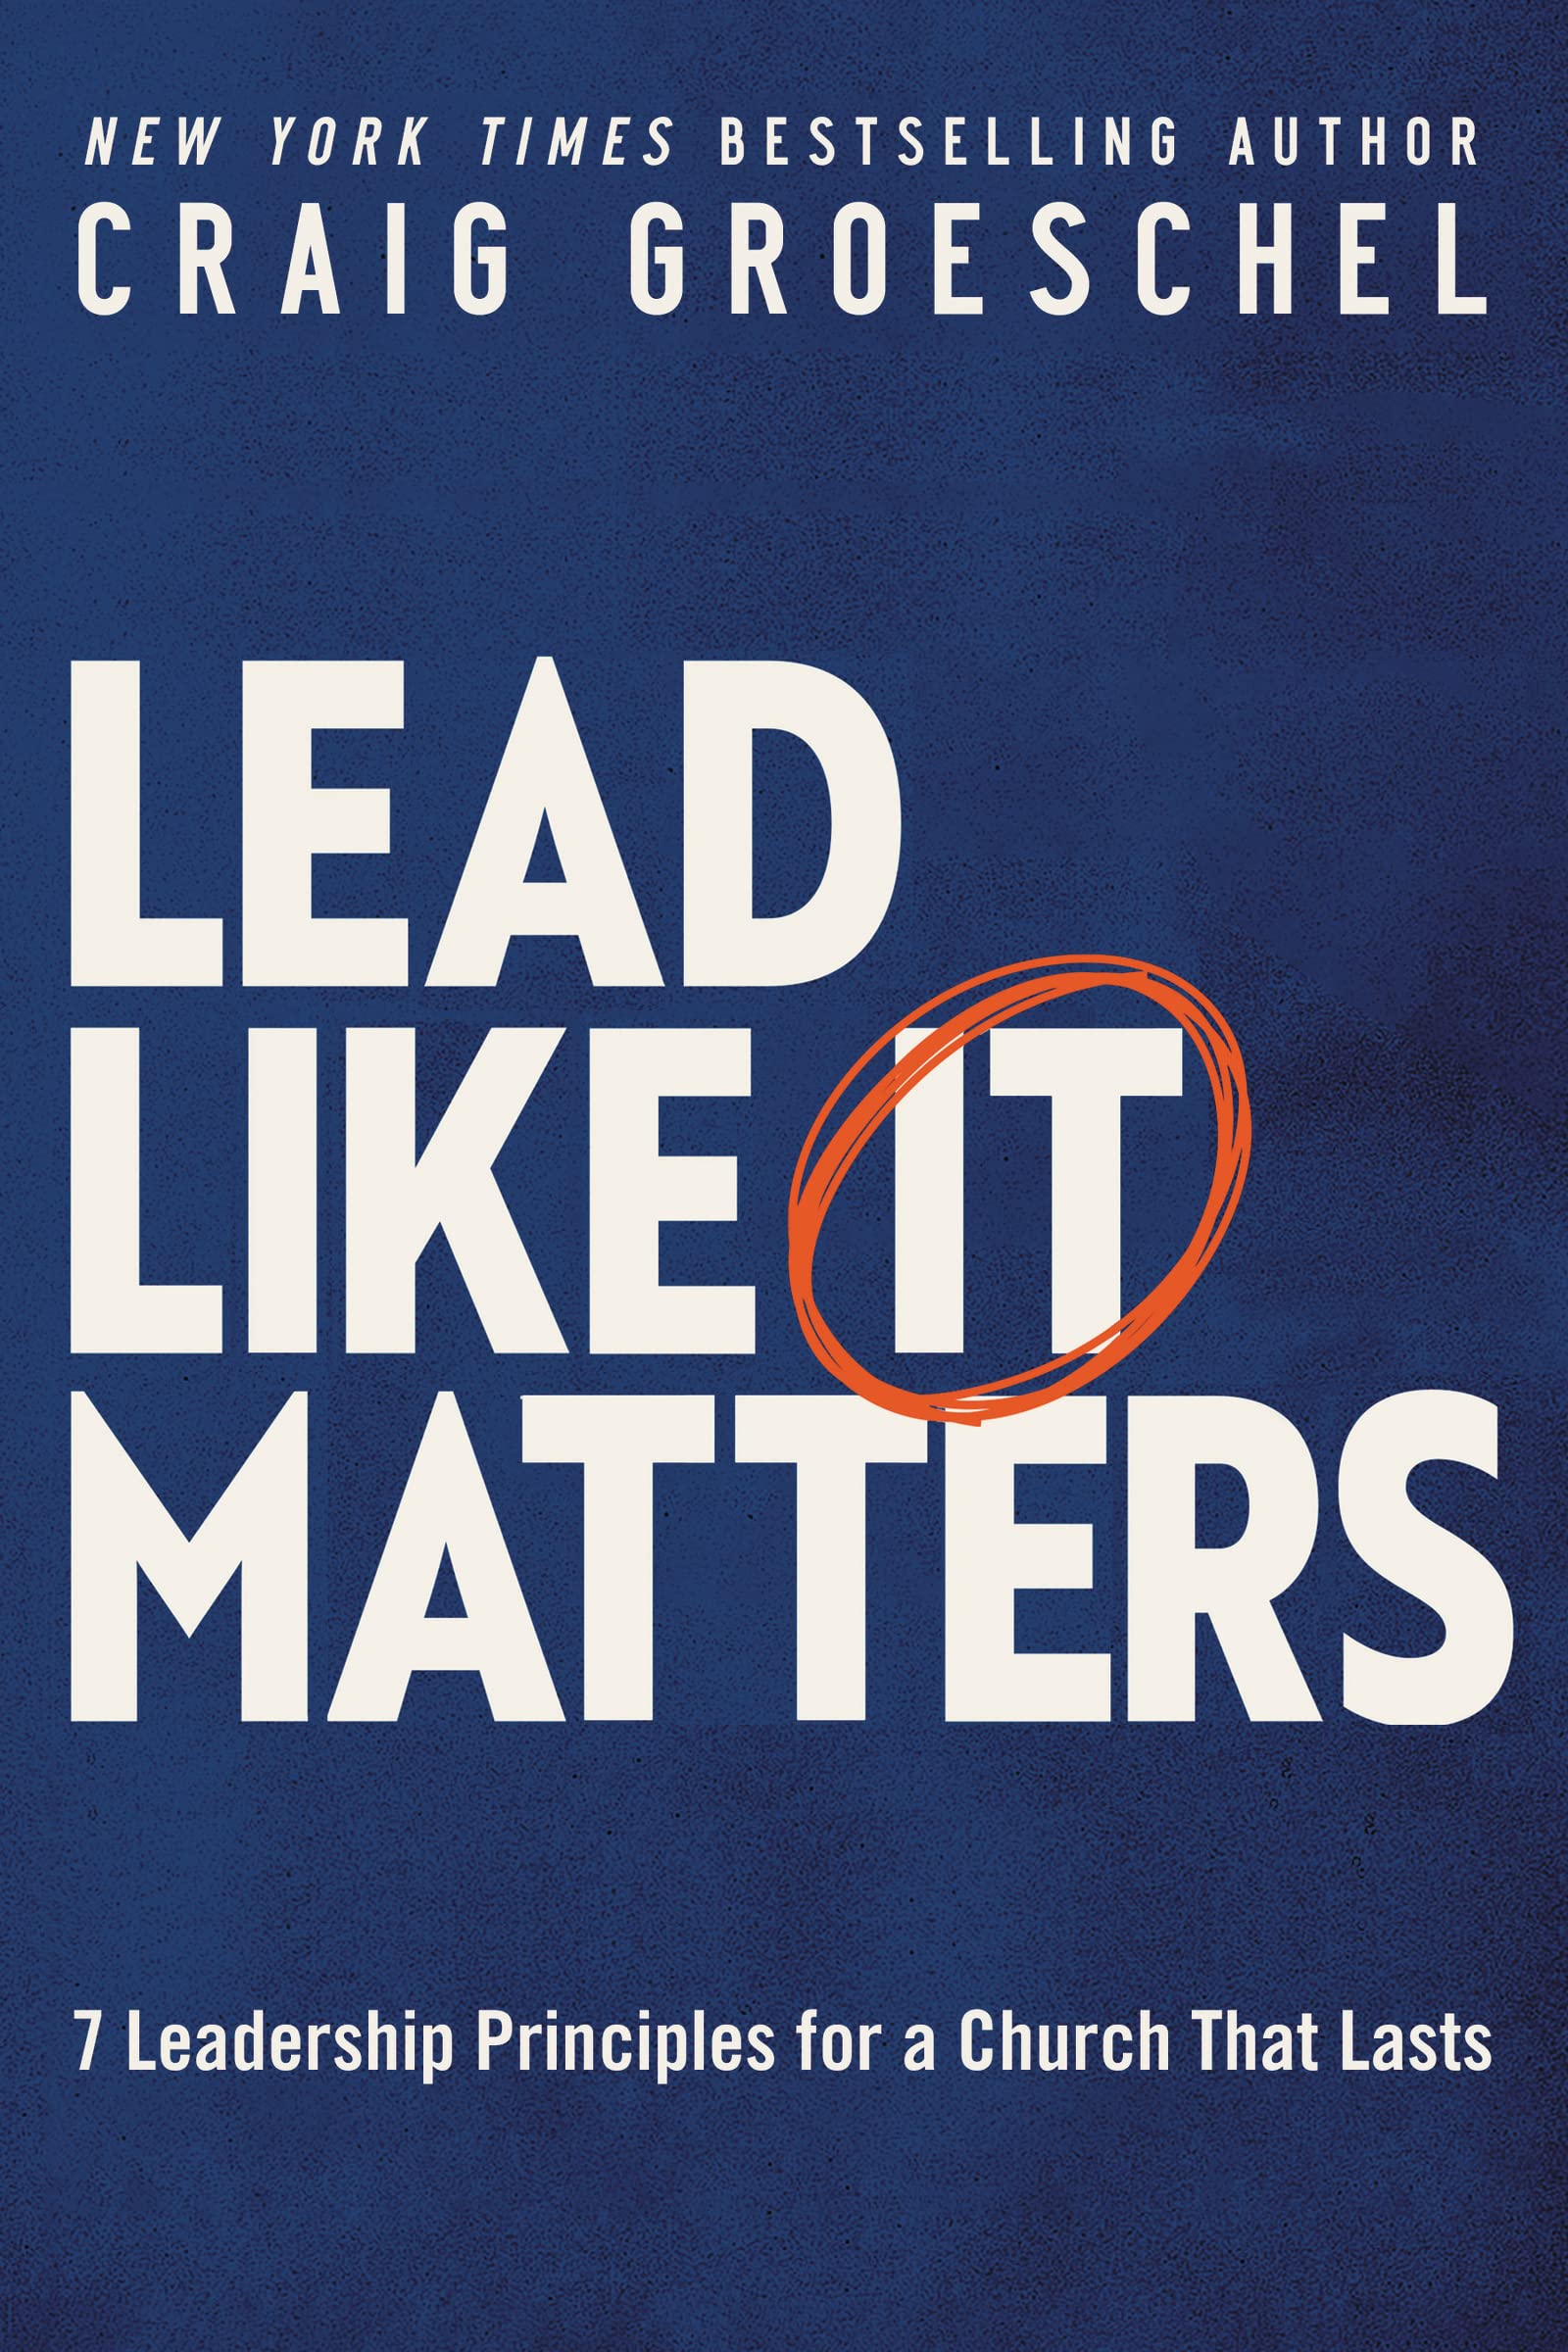 Lead like it matters